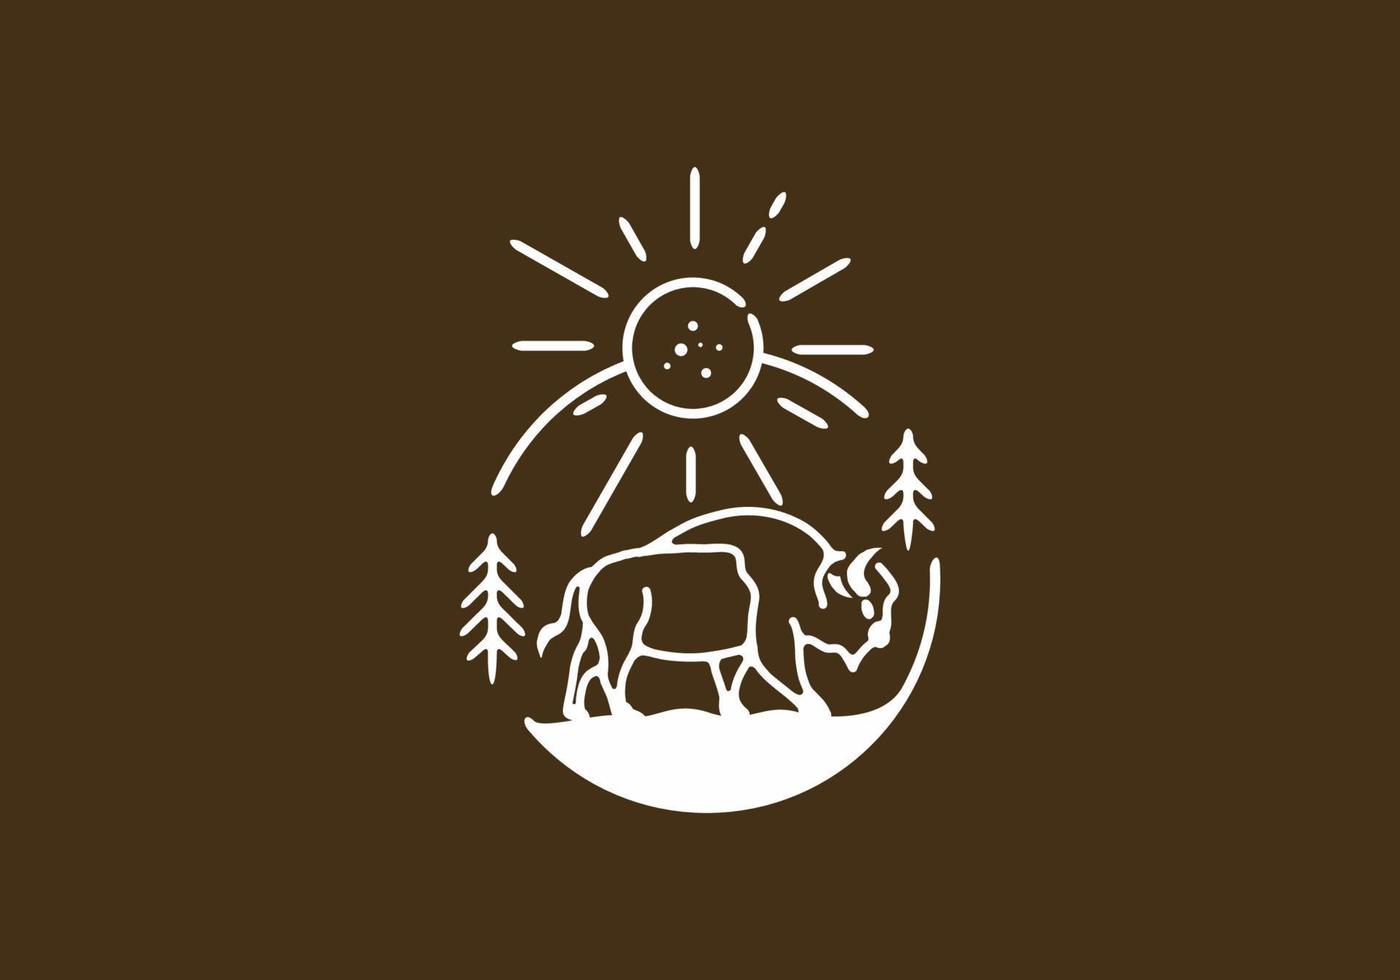 Line art illustration of bison vector